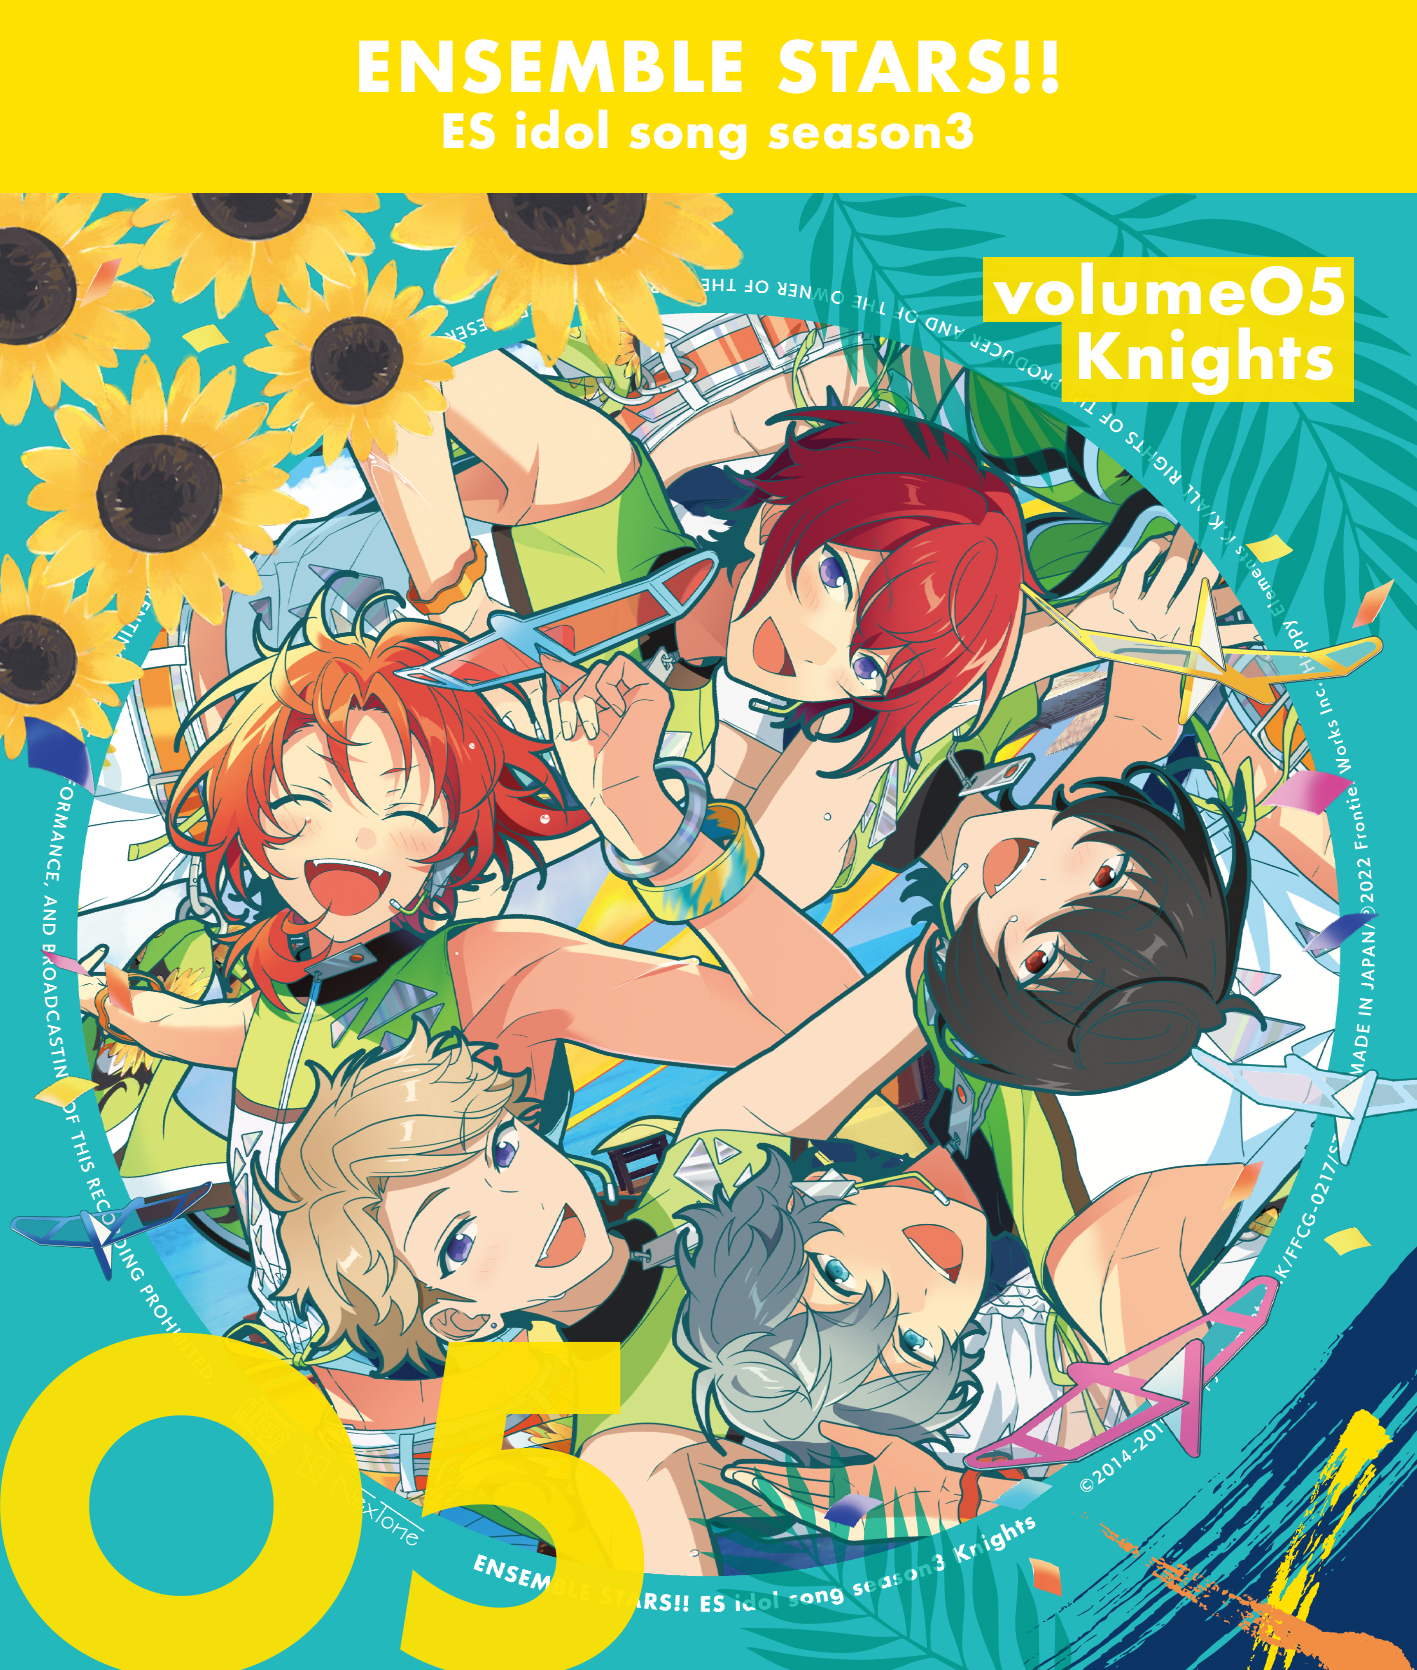 あんスタ！！」，“ESアイドルソング season3 vol.5 Knights”のCD